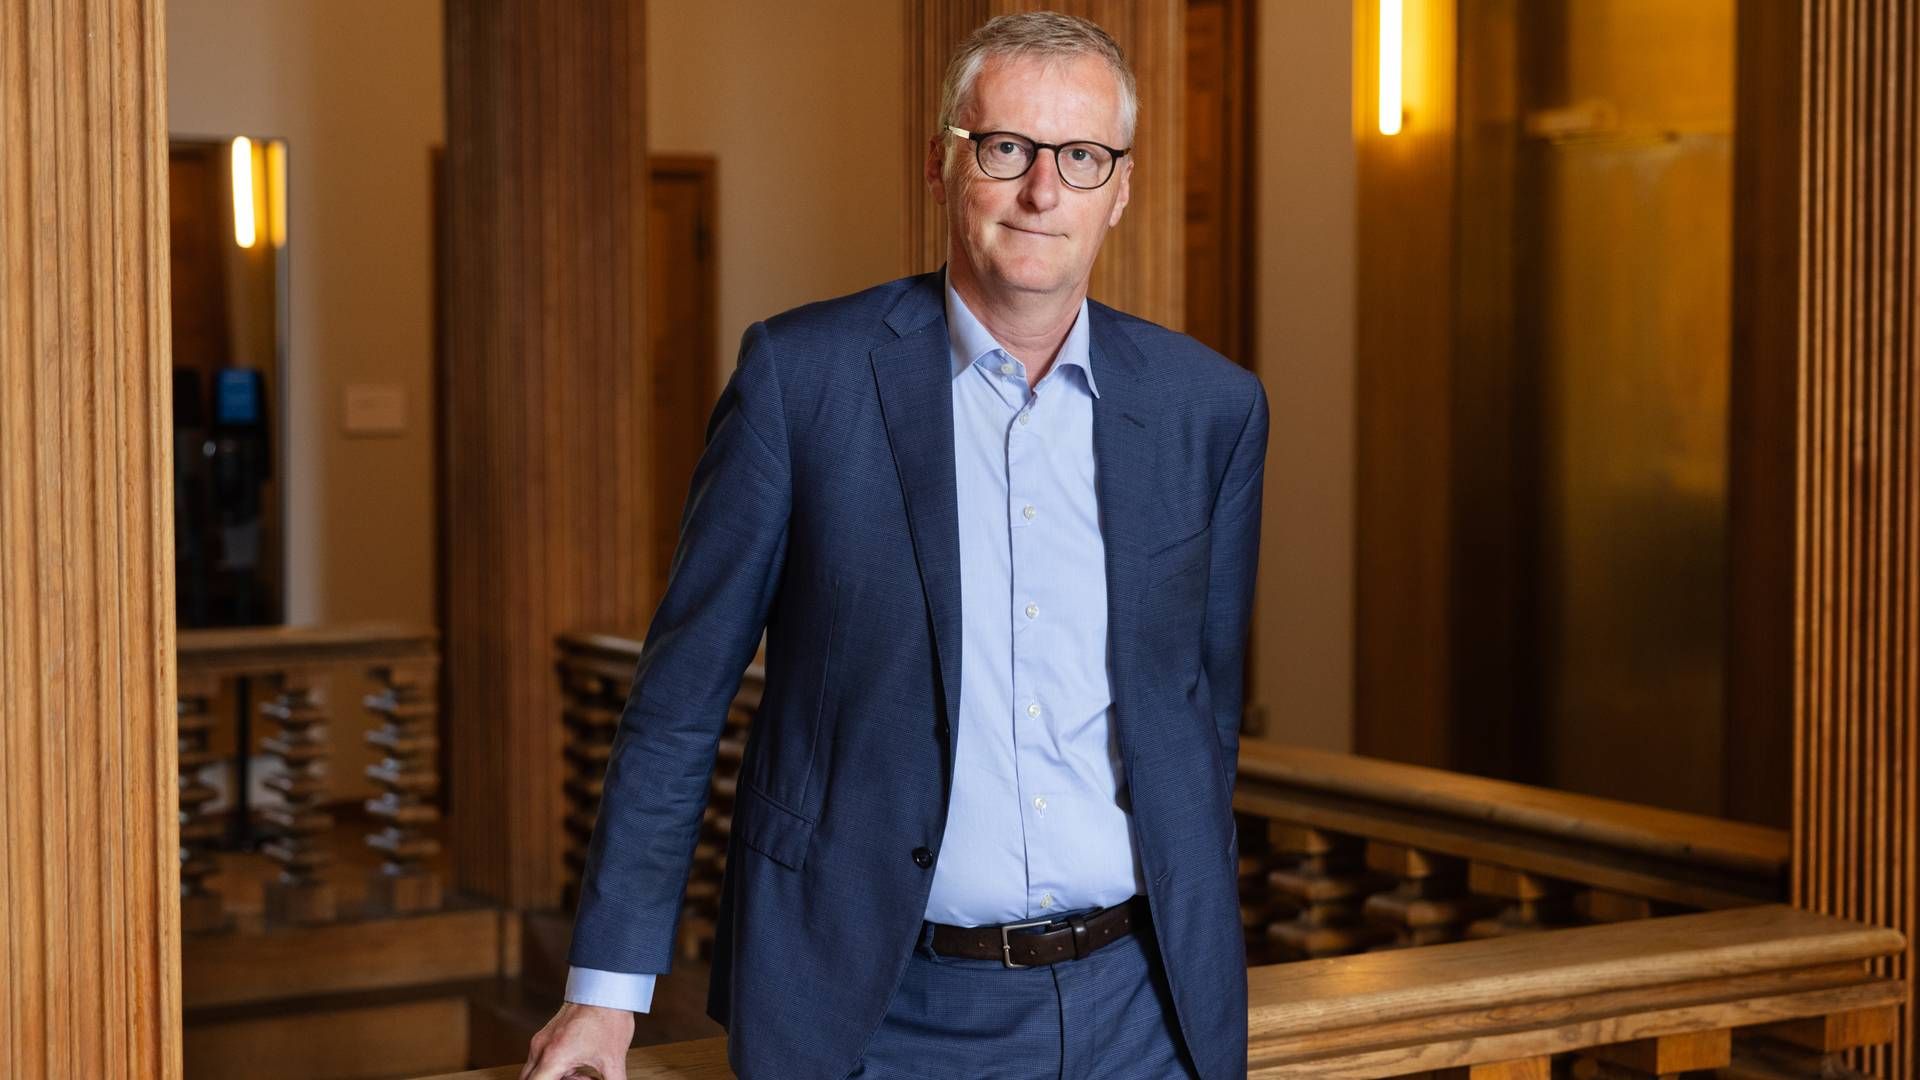 Laurits Rønn fik sin bestalling som advokat i 1994 og er i dag en del af direktionen i erhvervsorganisationen Dansk Erhverv. | Foto: Gregers Tycho